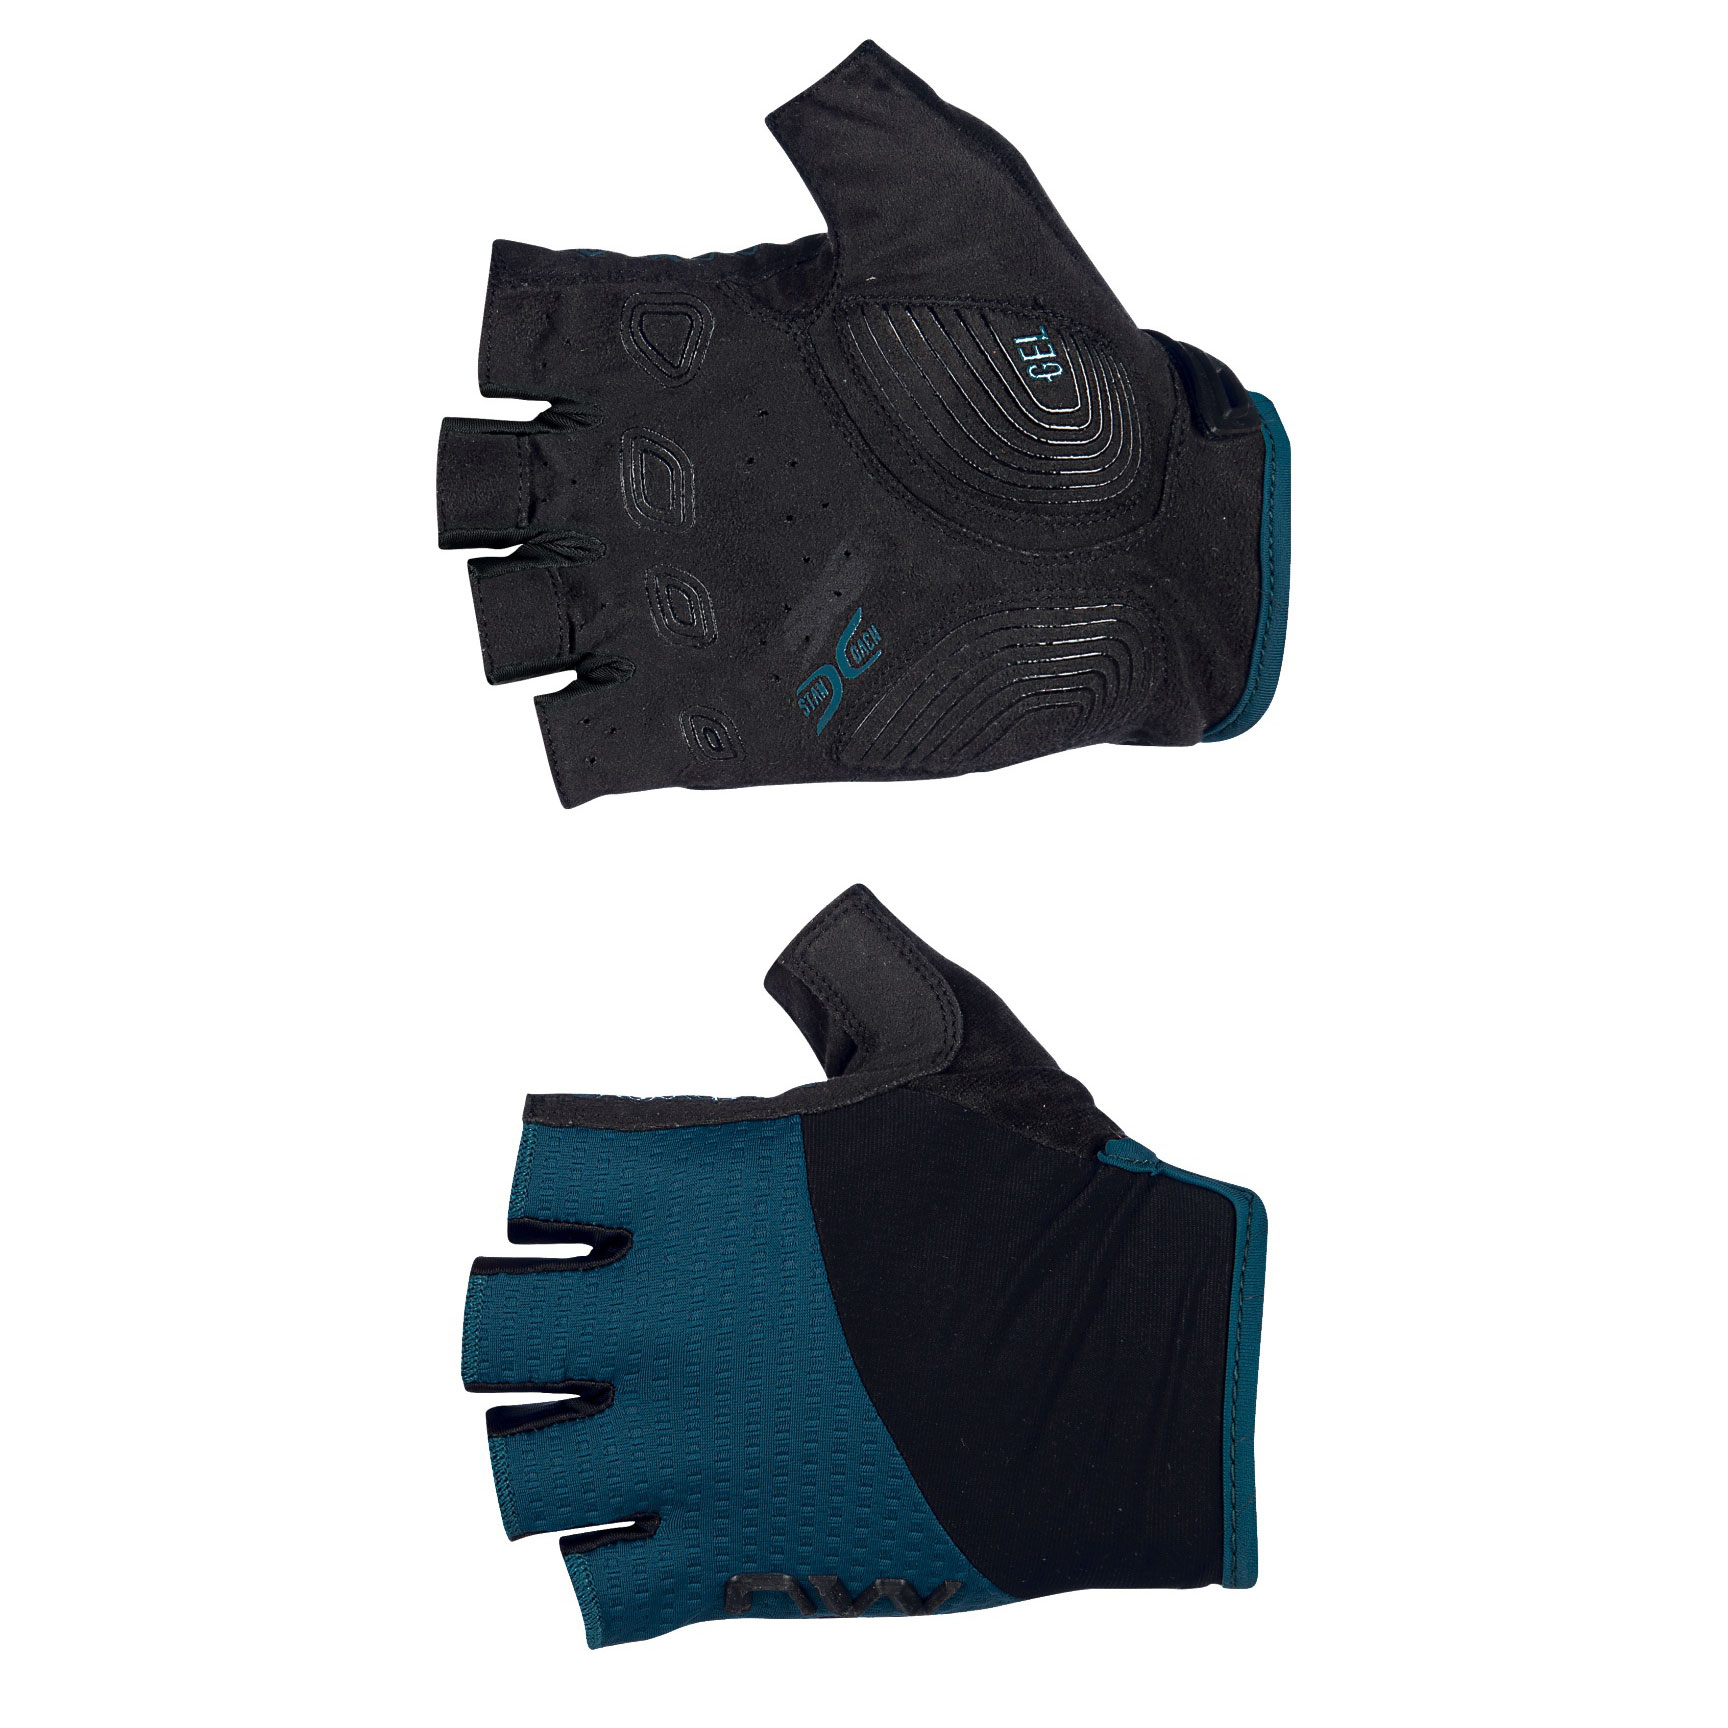 Produktbild von Northwave Fast Kurzfinger-Handschuhe Damen - schwarz/blau 08